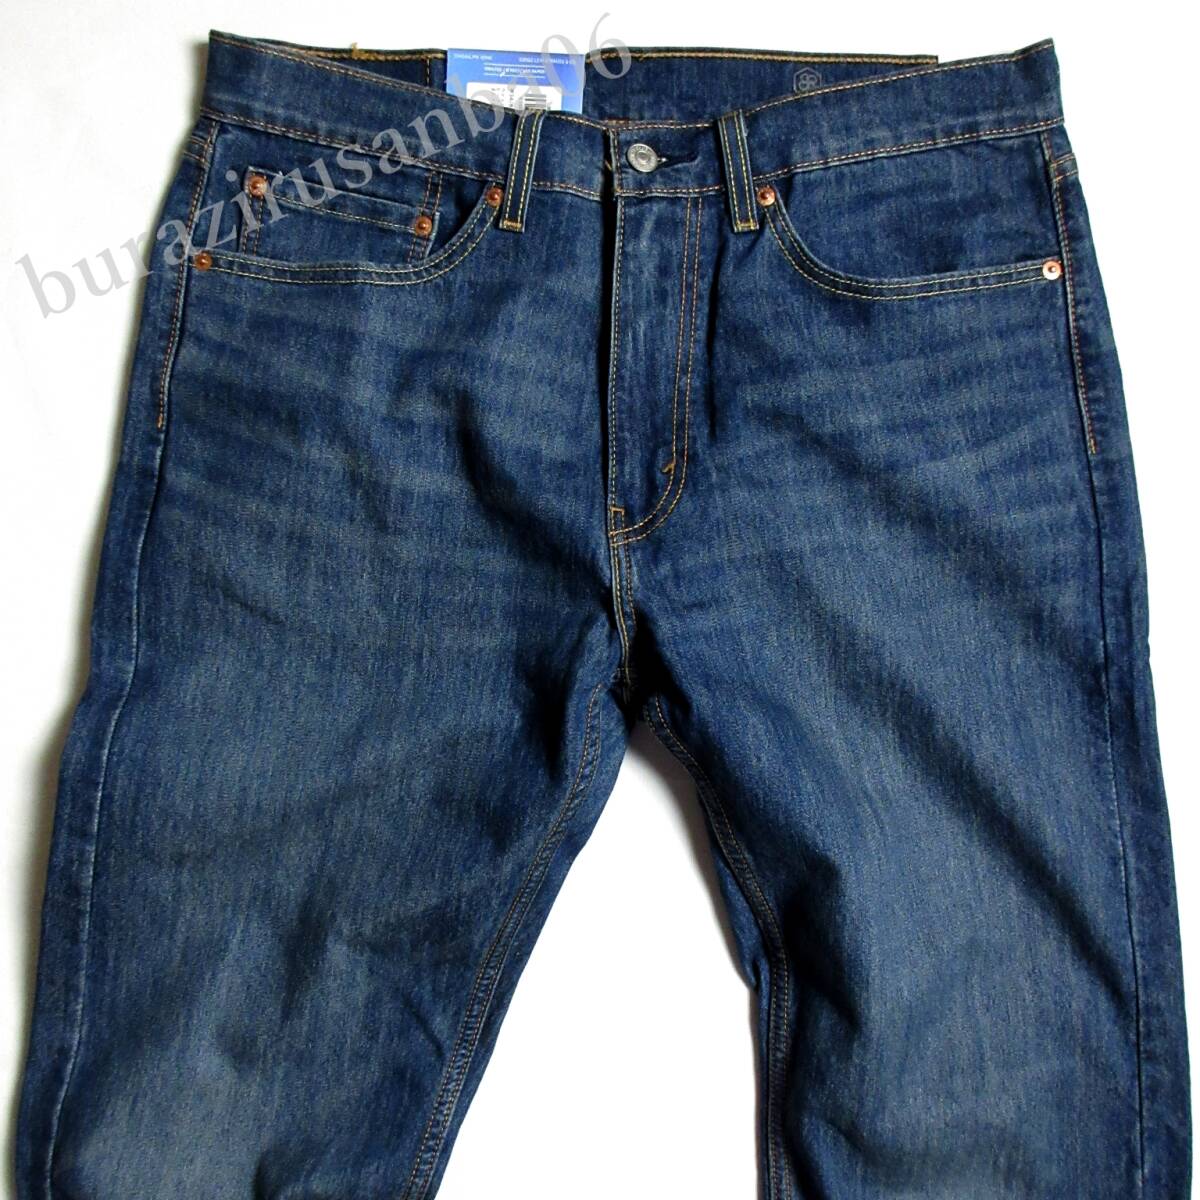 W33* не использовался обычная цена 10,450 иен Levi\'s Levi's 505 COOL Denim брюки джинсы распорка стрейч весна лето скорость .... Denim 00505-2624